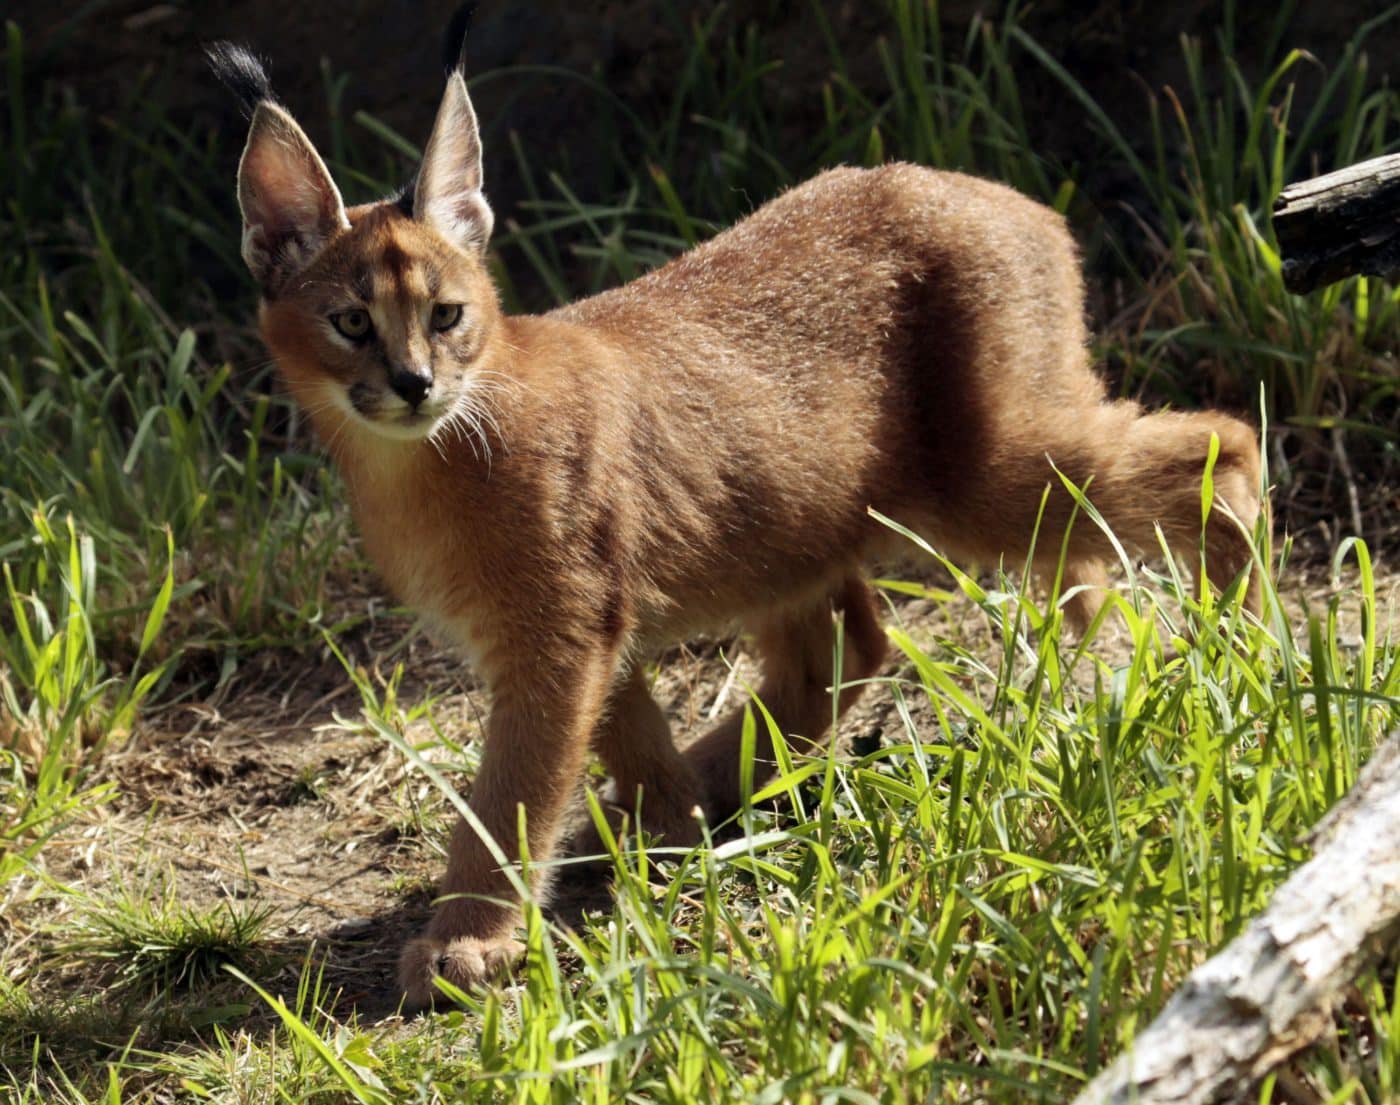 Un joven gato Caracal caminando sobre la hierba, con sus características orejas puntiagudas y pelaje rojizo